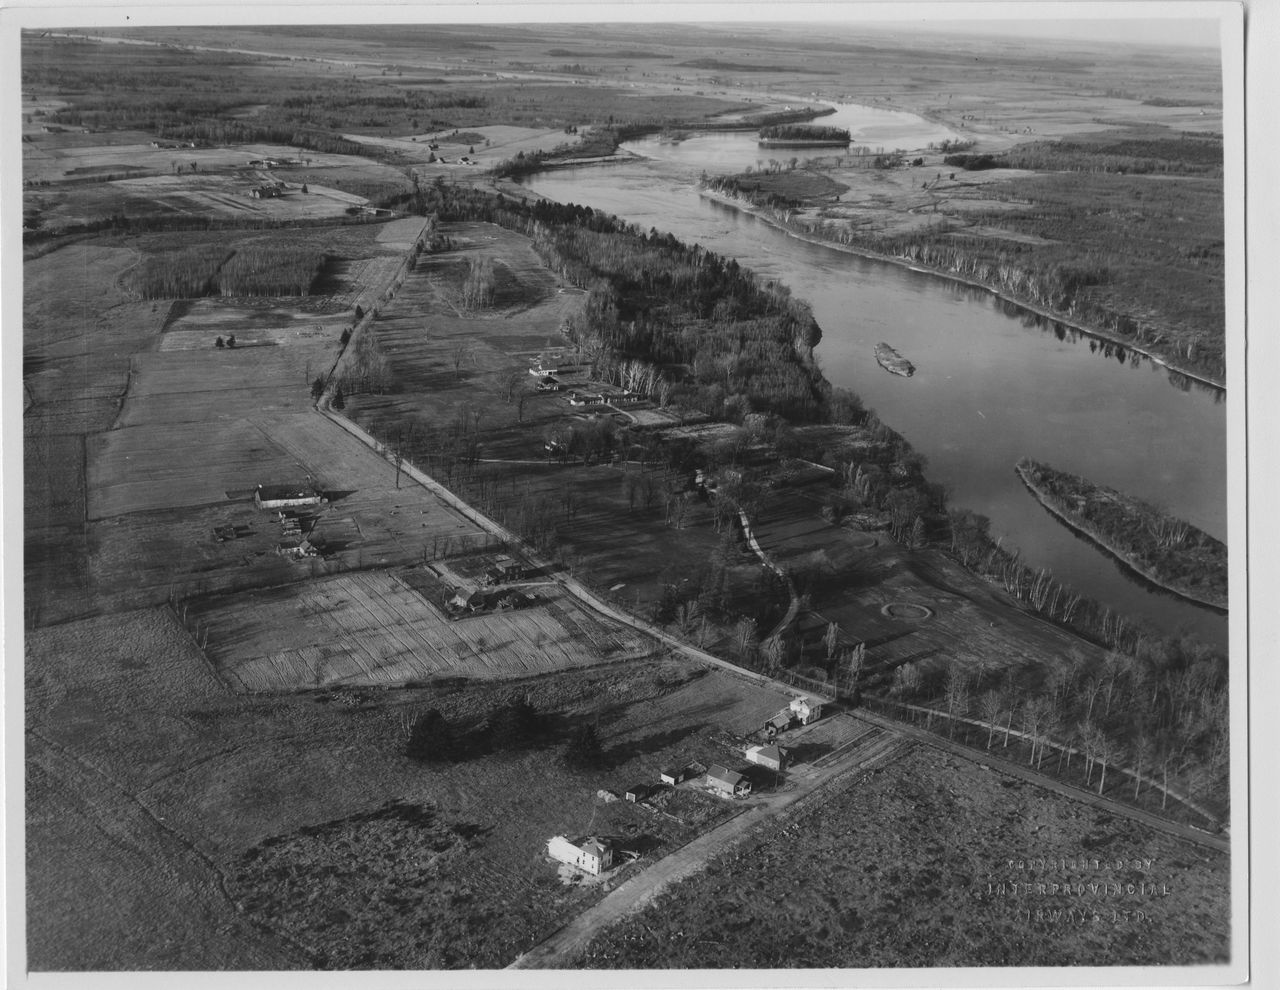 Photographie en noir et blanc démontrant une vue aérienne du parcours de golf aménagé le long de la rivière Saint-François. On y voit également plusieurs maisons dispersées dans les champs ceinturant le terrain de golf.